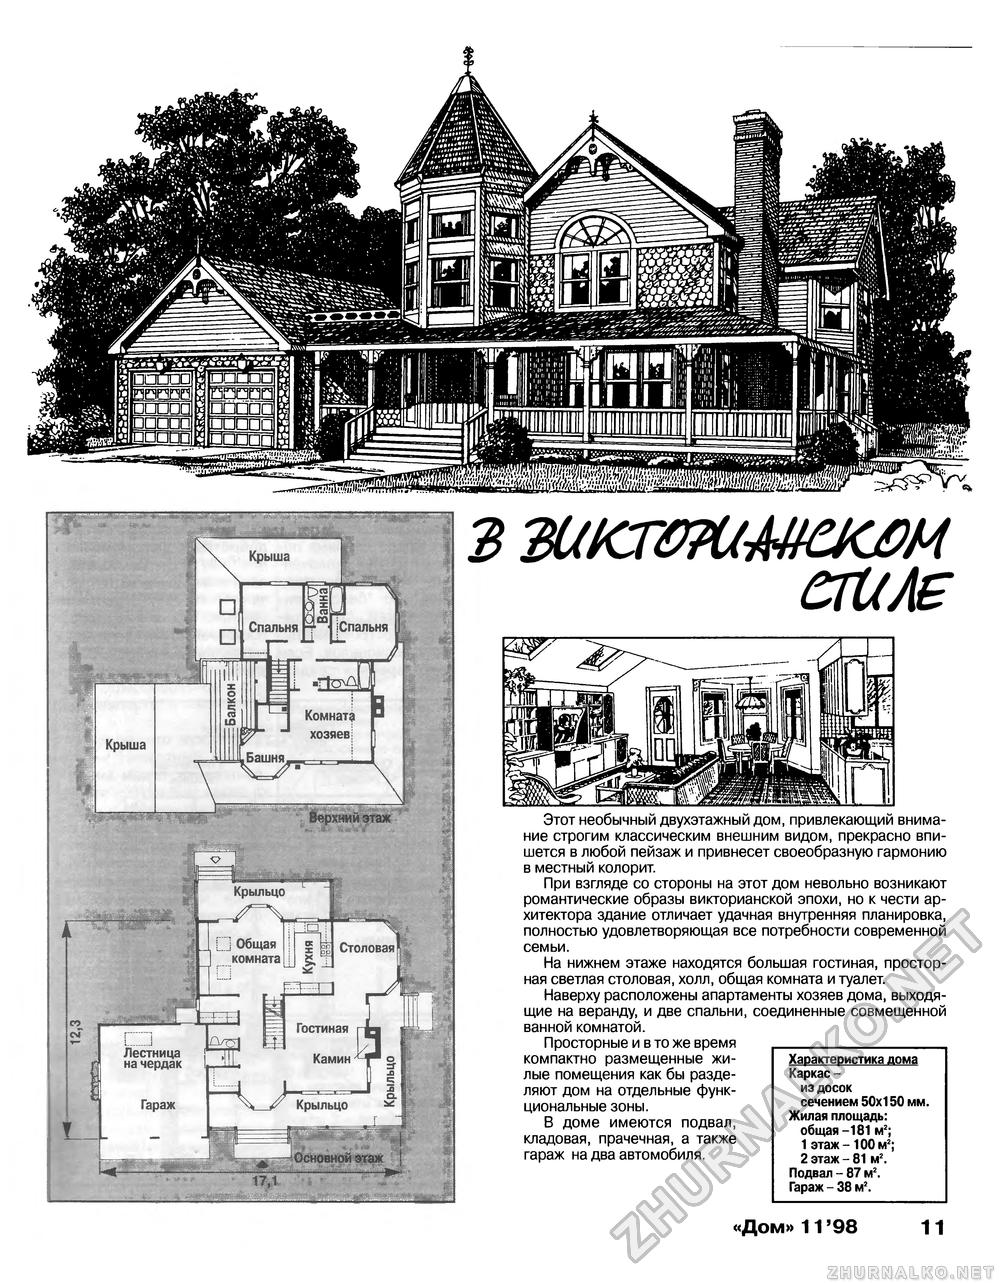 Дом 1998-11, страница 11